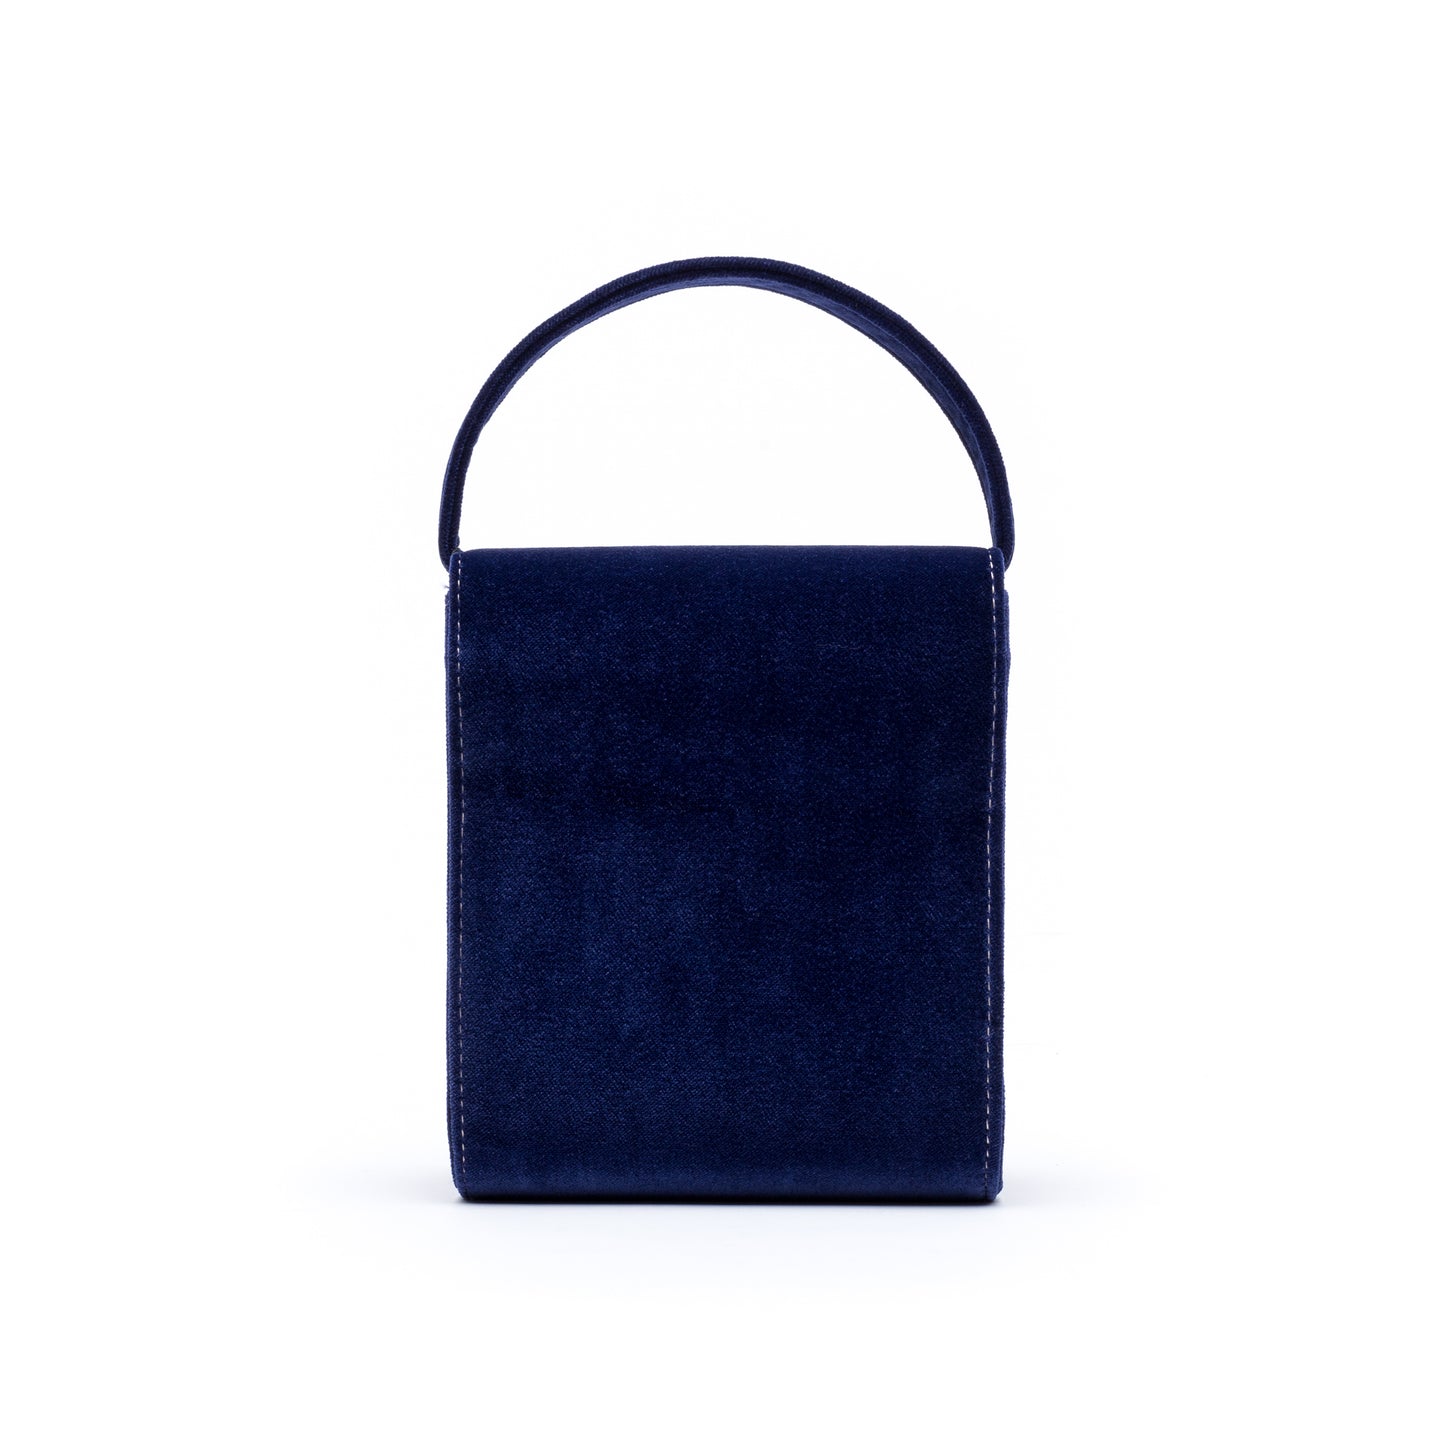 Cucci- Navy Blue Velvet Bag